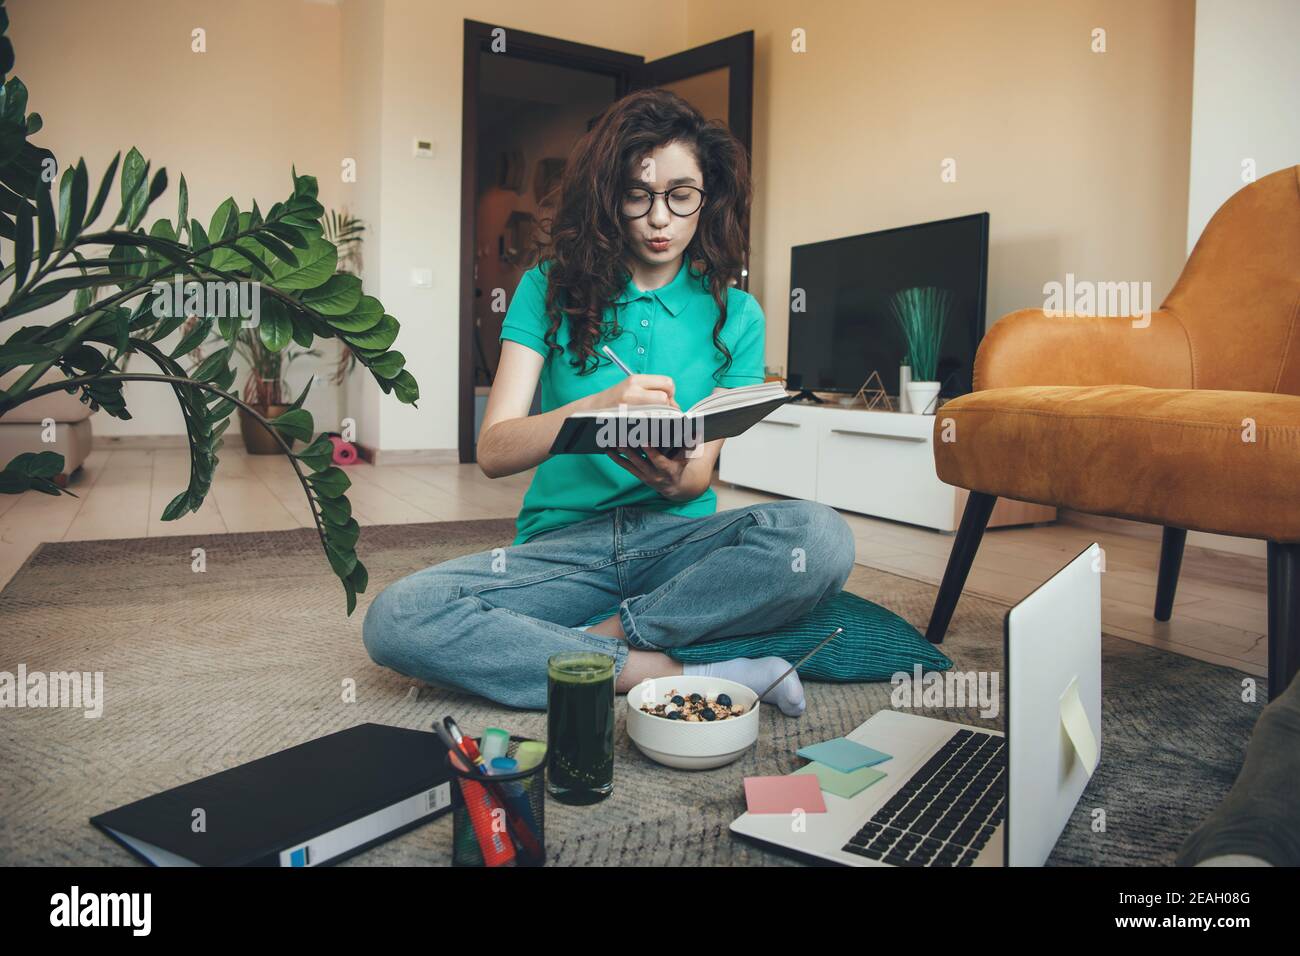 La fille caucasienne avec les cheveux bouclés a la leçon en ligne sur le sol à l'ordinateur portable tout en mangeant des céréales et du vert frais jus Banque D'Images